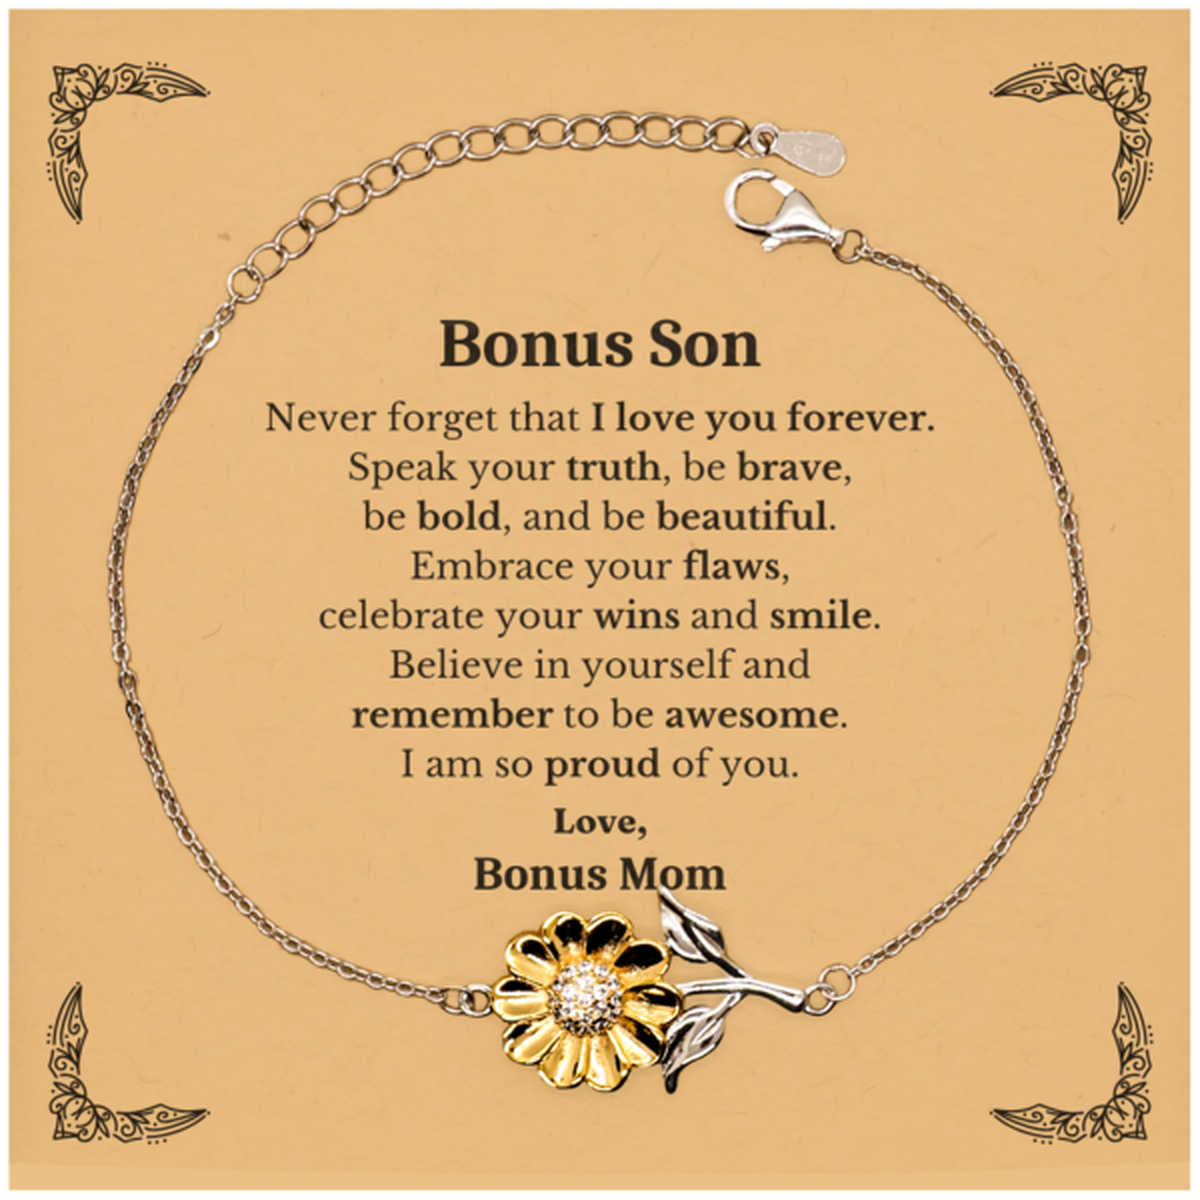 Bonus Son Sunflower Bracelet, Never forget that I love you forever, Inspirational Bonus Son Birthday Unique Gifts From Bonus Mom